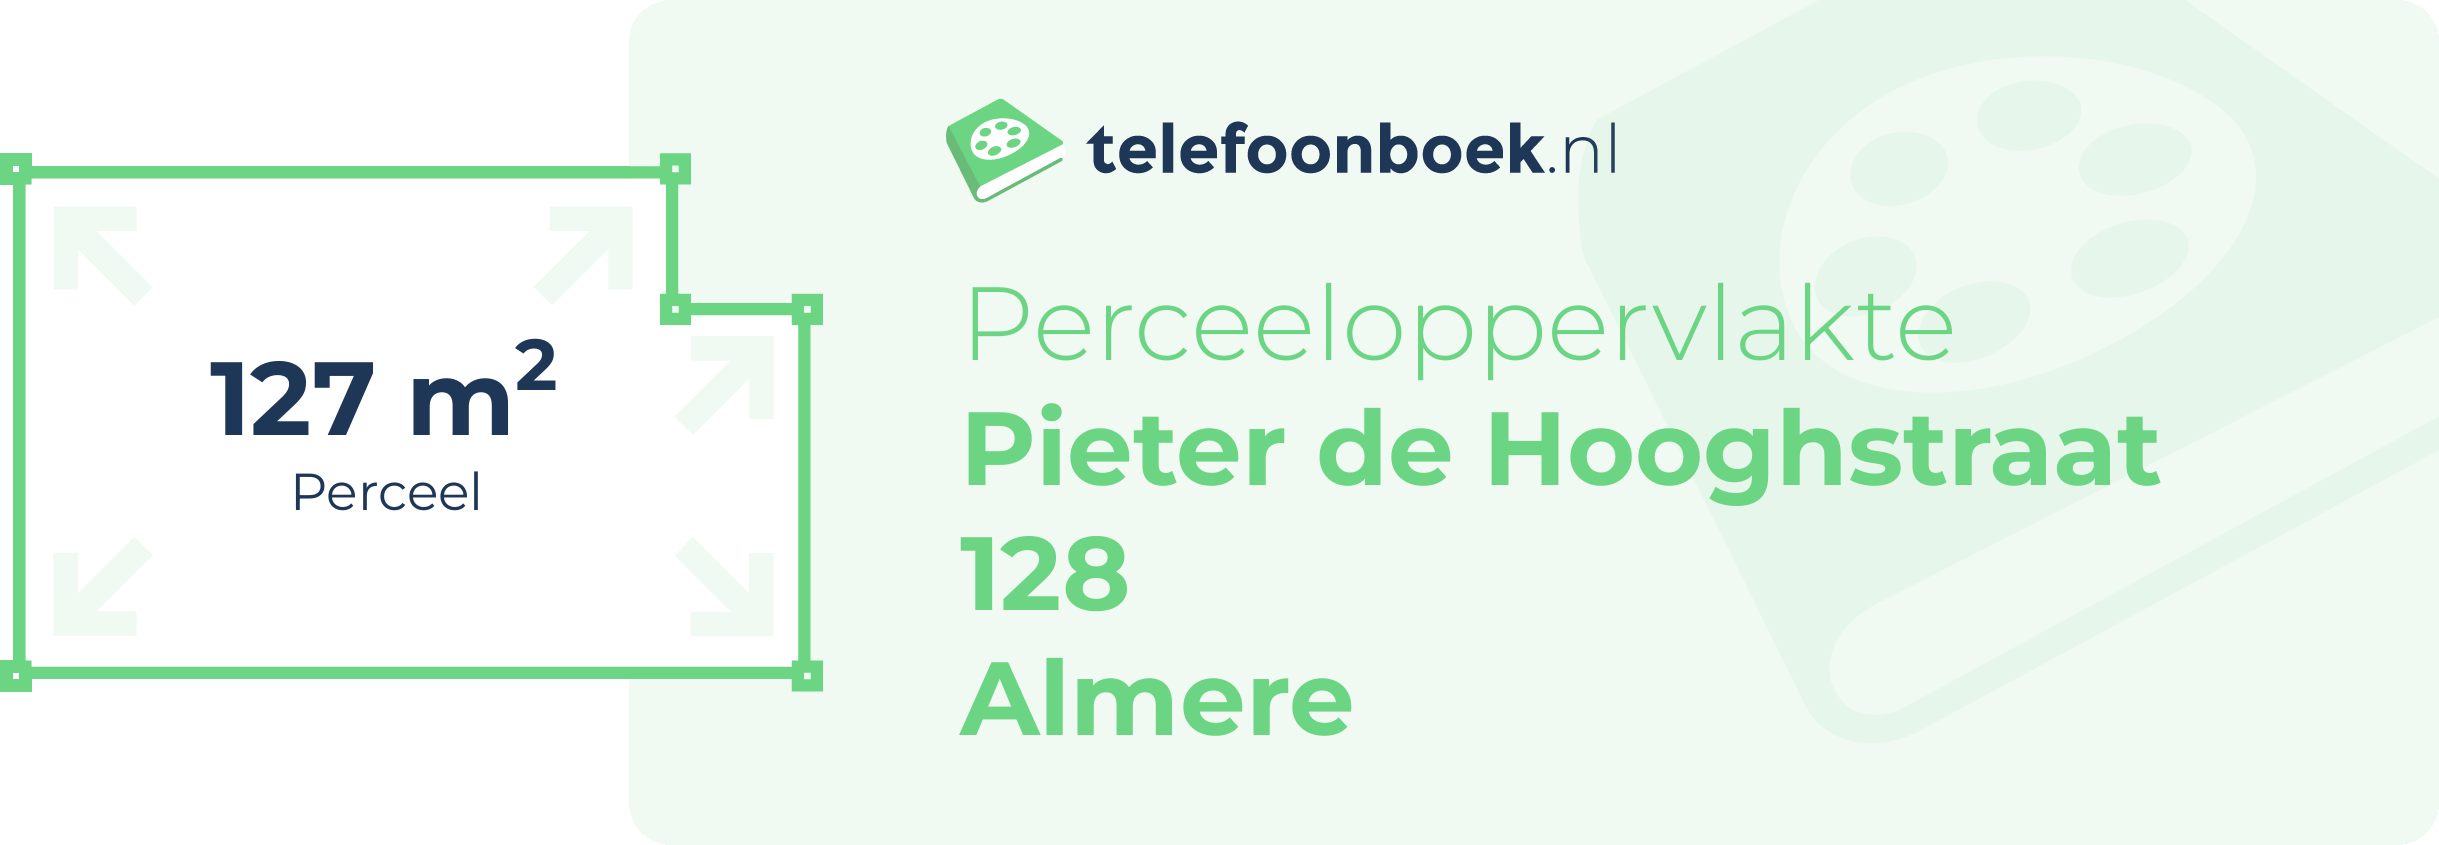 Perceeloppervlakte Pieter De Hooghstraat 128 Almere